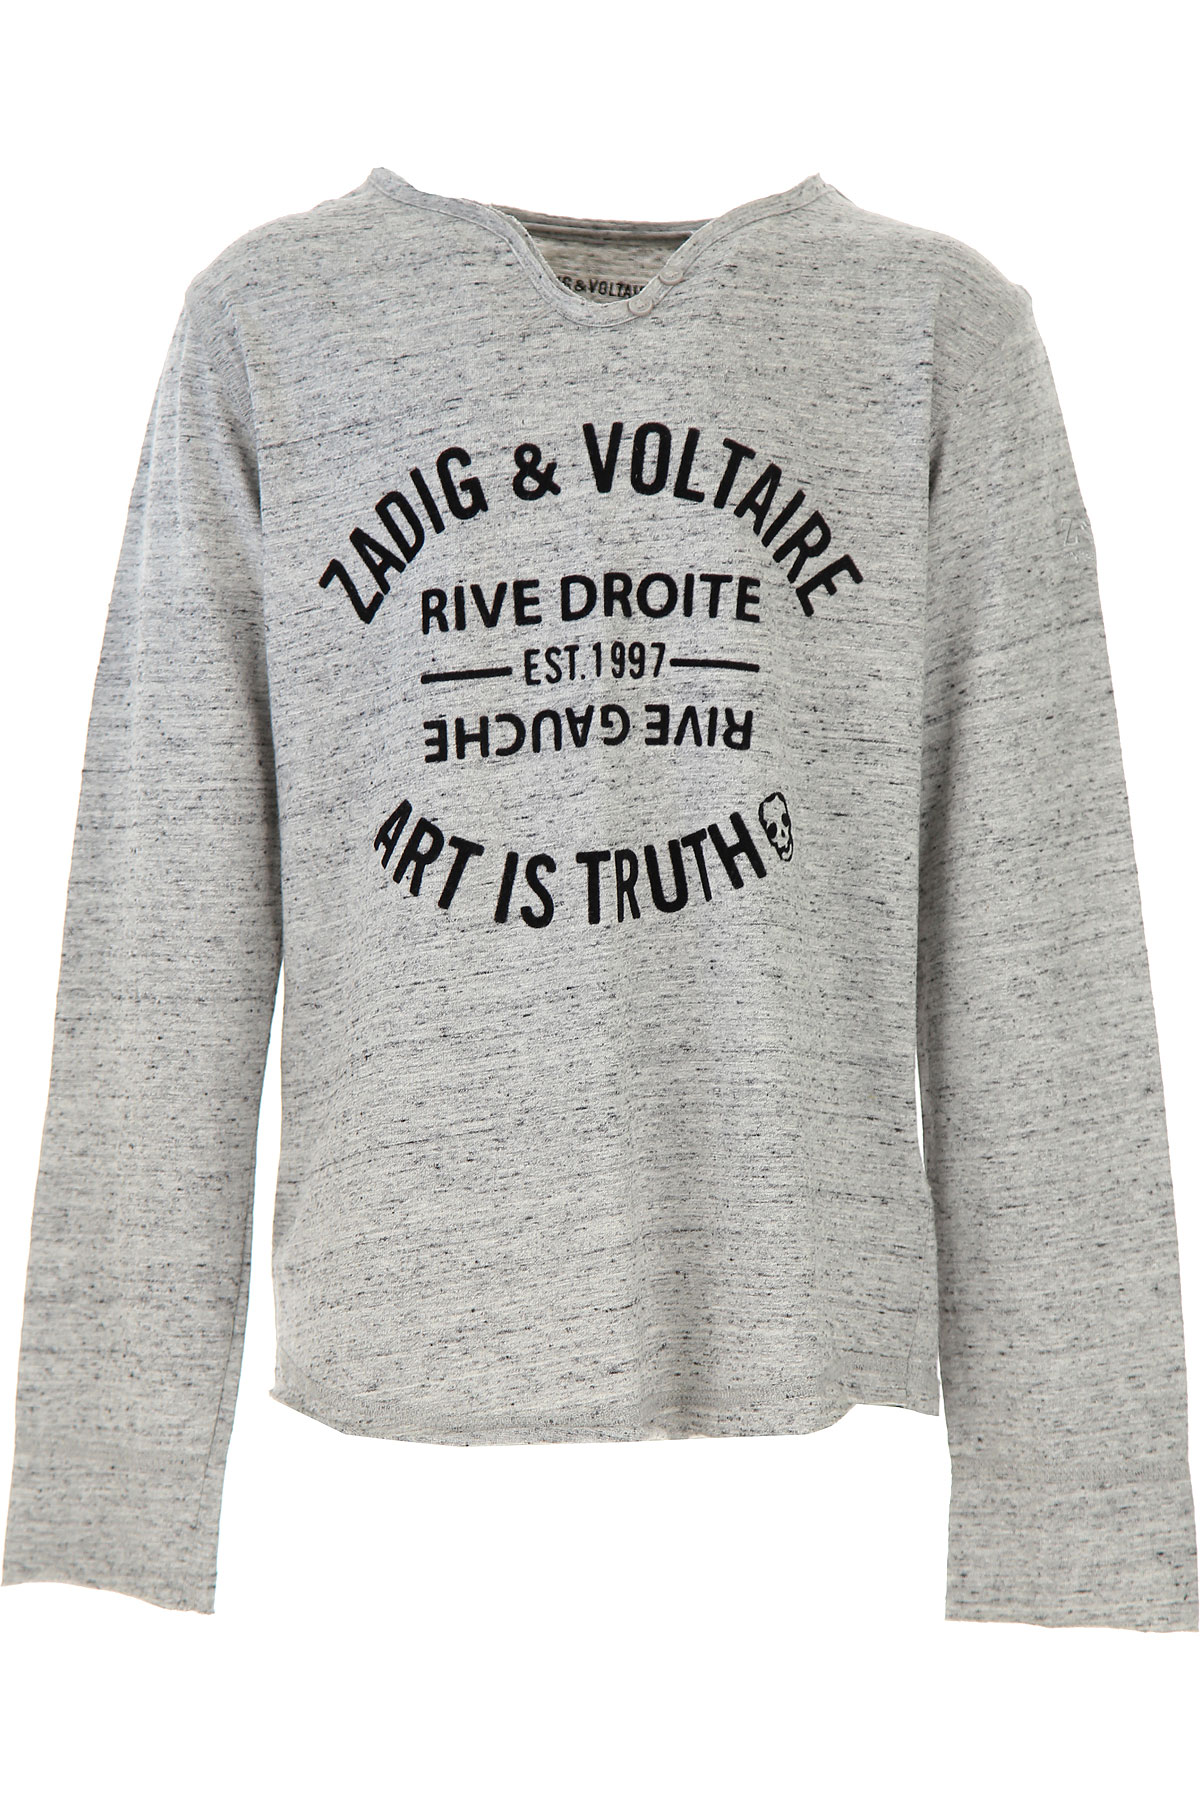 Zadig & Voltaire Kinder T-Shirt für Jungen Günstig im Sale, Grau, Baumwolle, 2017, 10Y 12Y 14Y 16Y 8Y